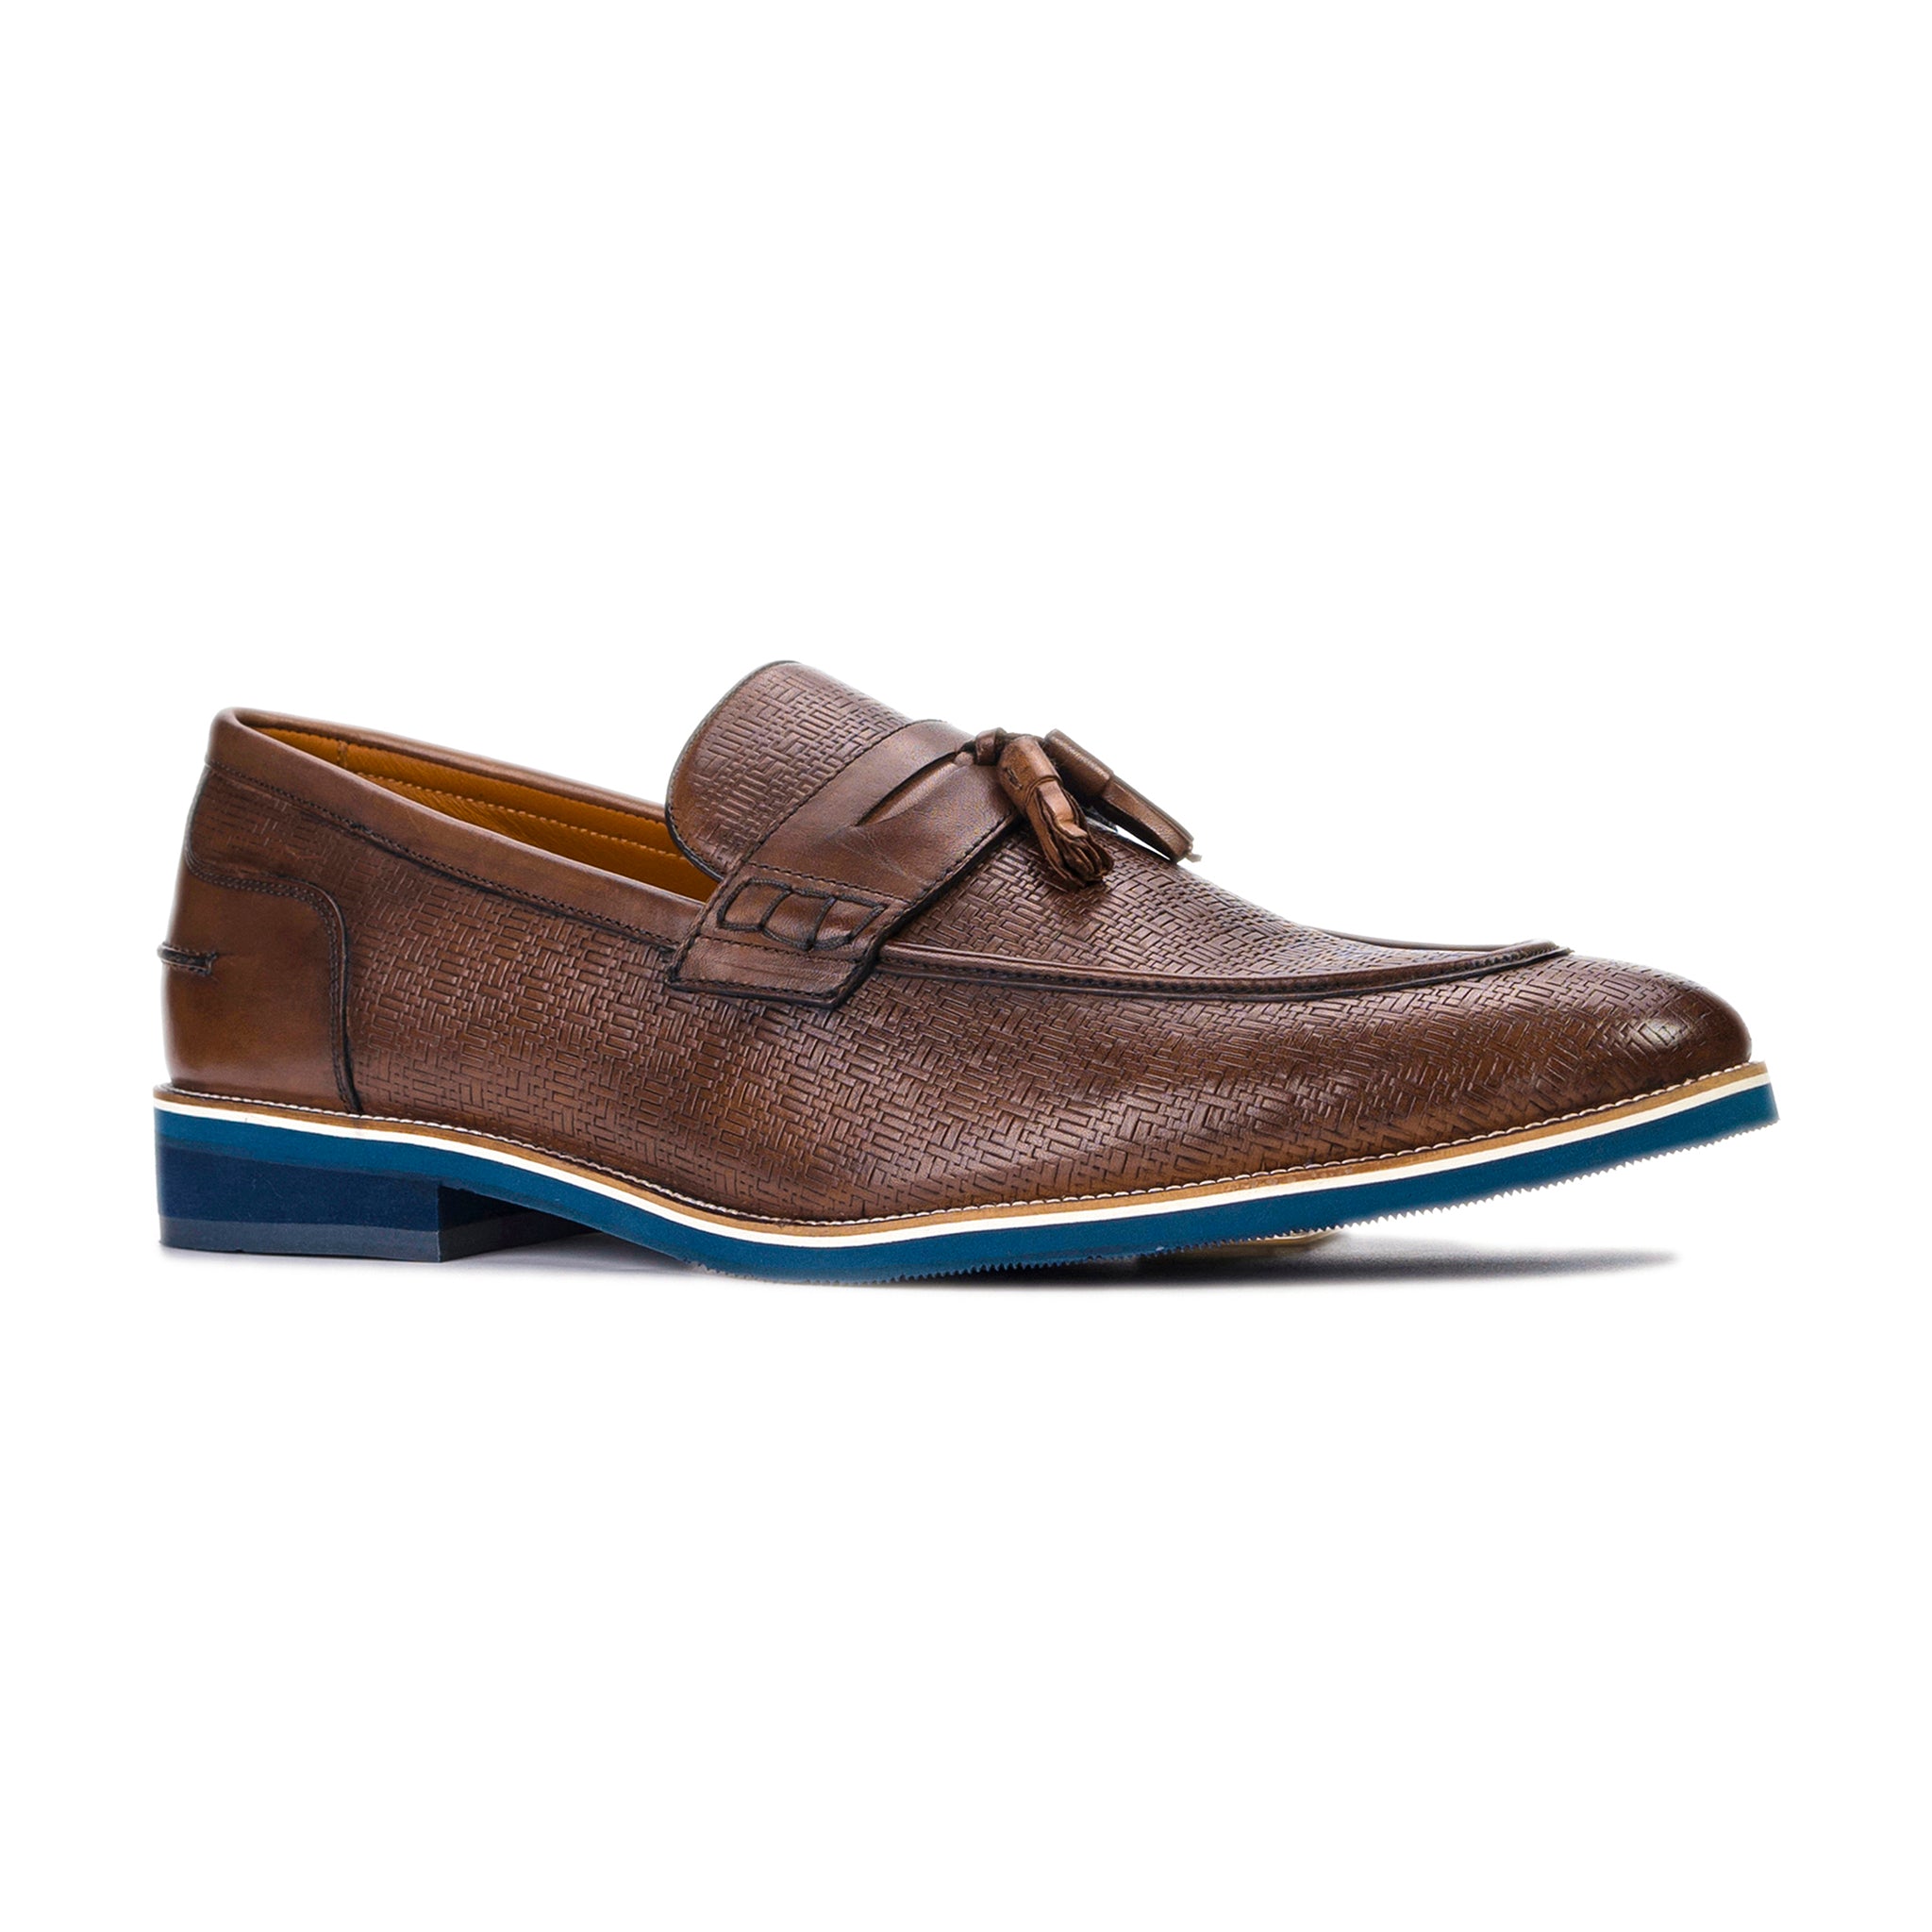 Garcia Tassel Loafer shoes brown